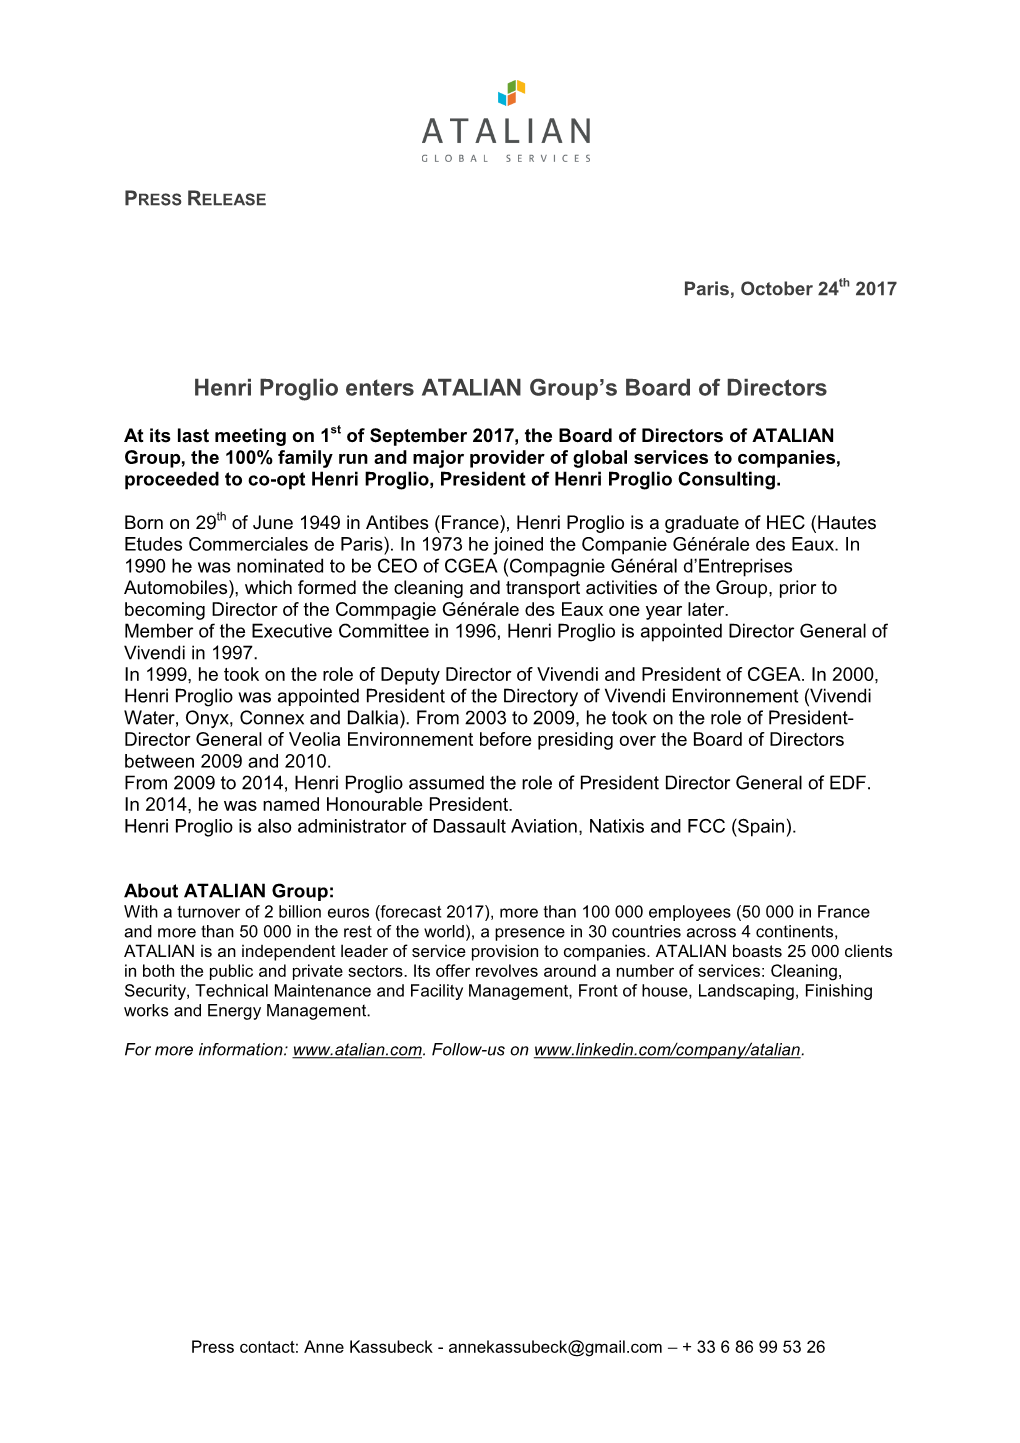 Henri Proglio Enters ATALIAN Group's Board of Directors